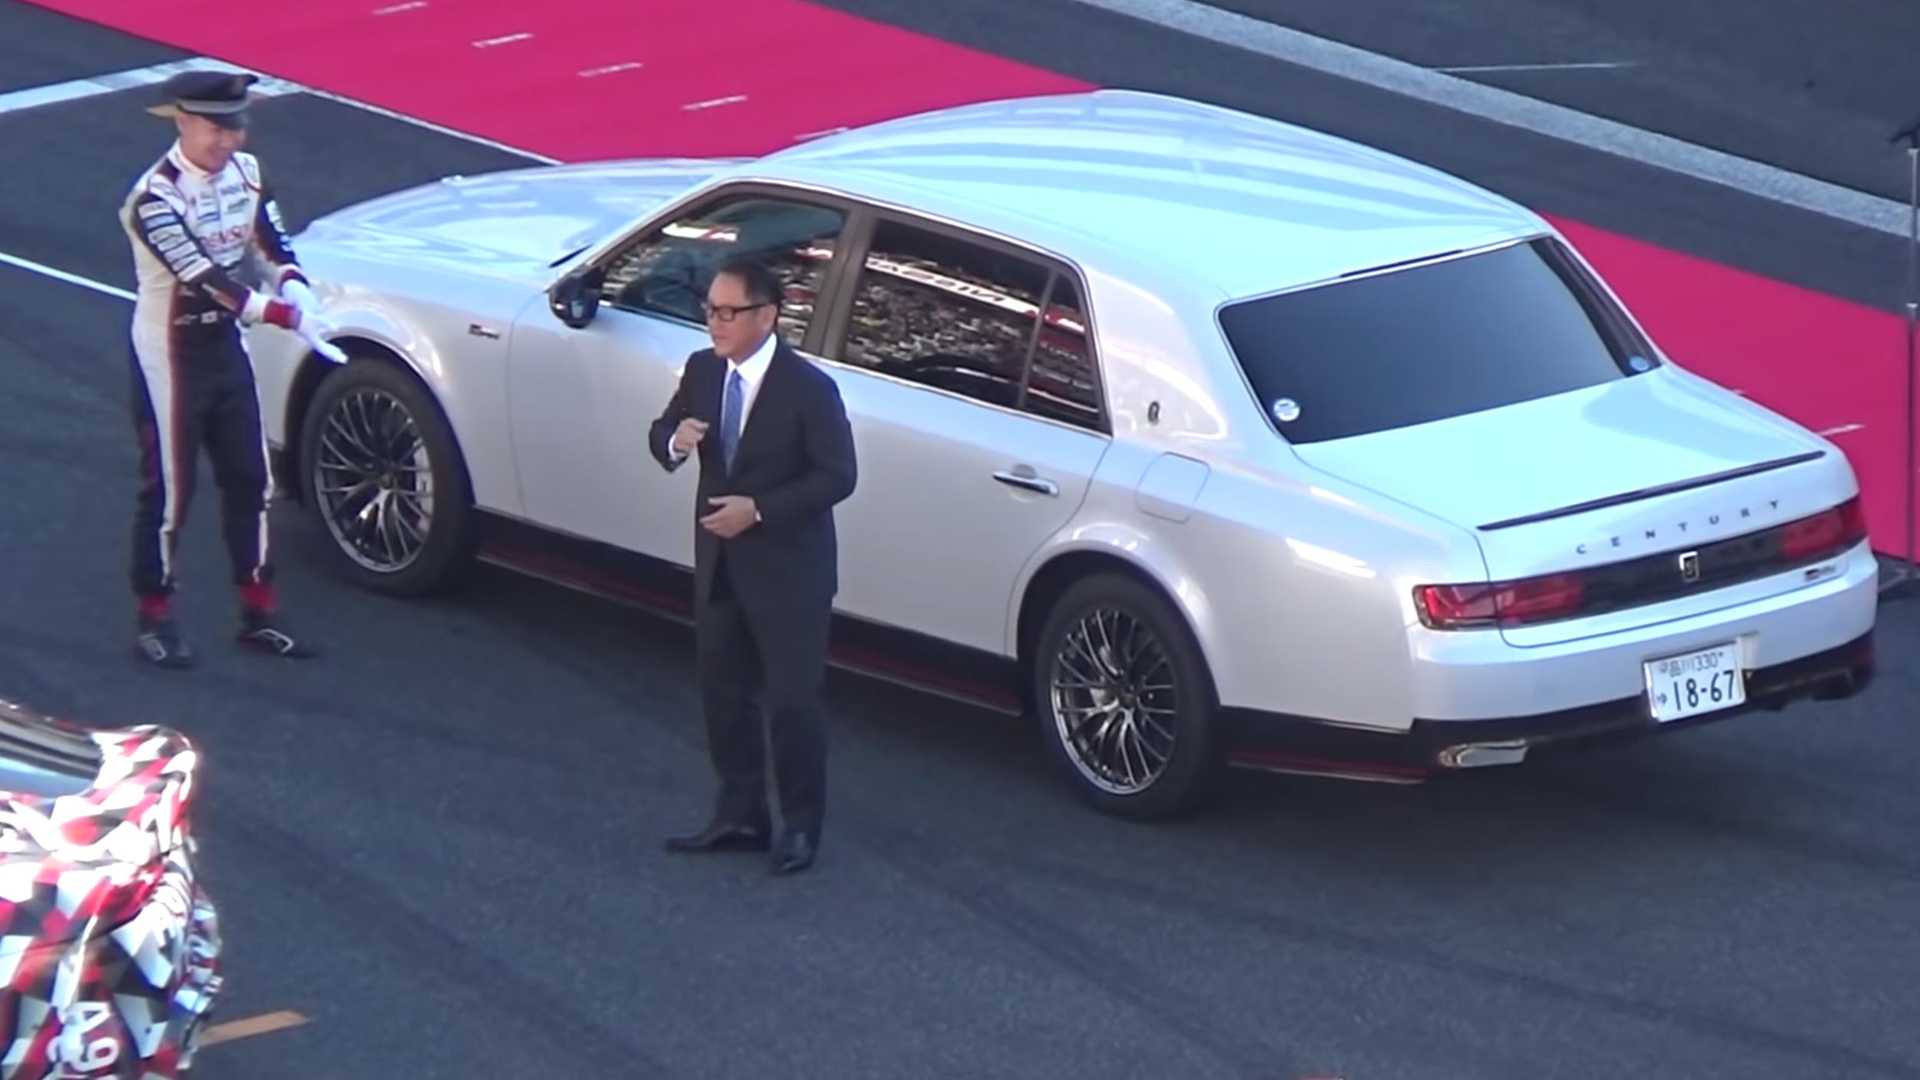 "بالفيديو" رئيس تويوتا يتباهى بسيارته الفاخرة على المضمار 55